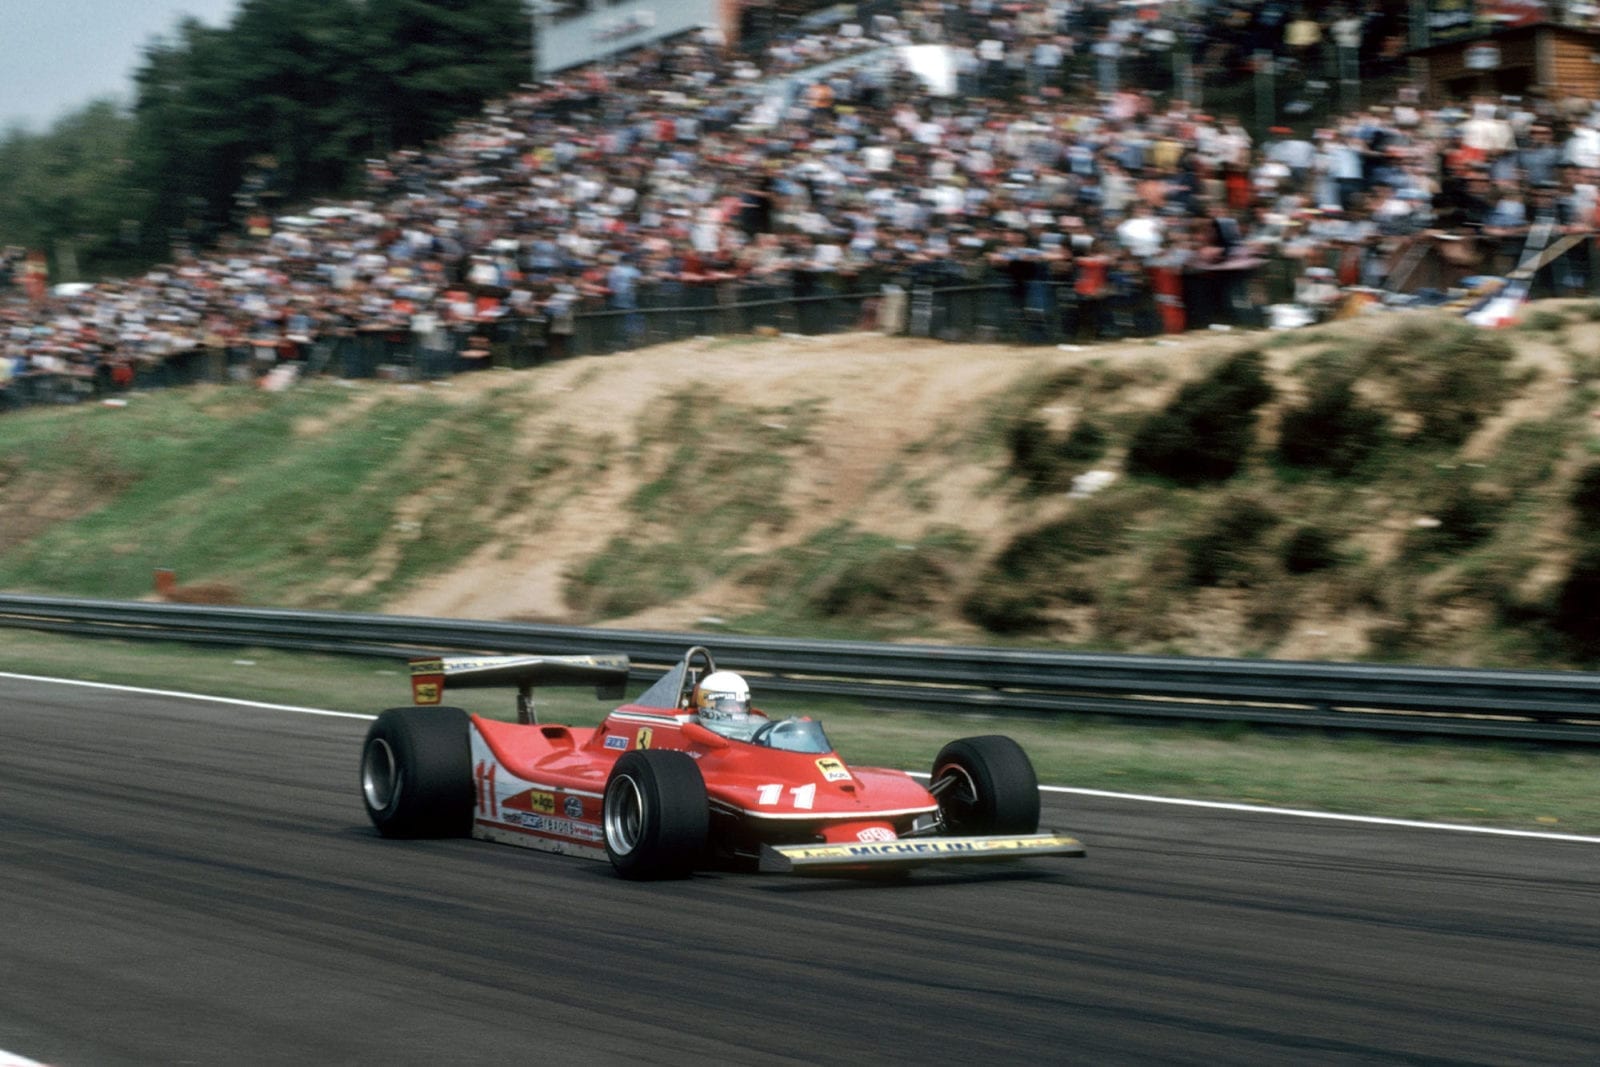 Jody Scheckter (Ferrari) at the 1979 Belgian Grand Prix, Zolder.